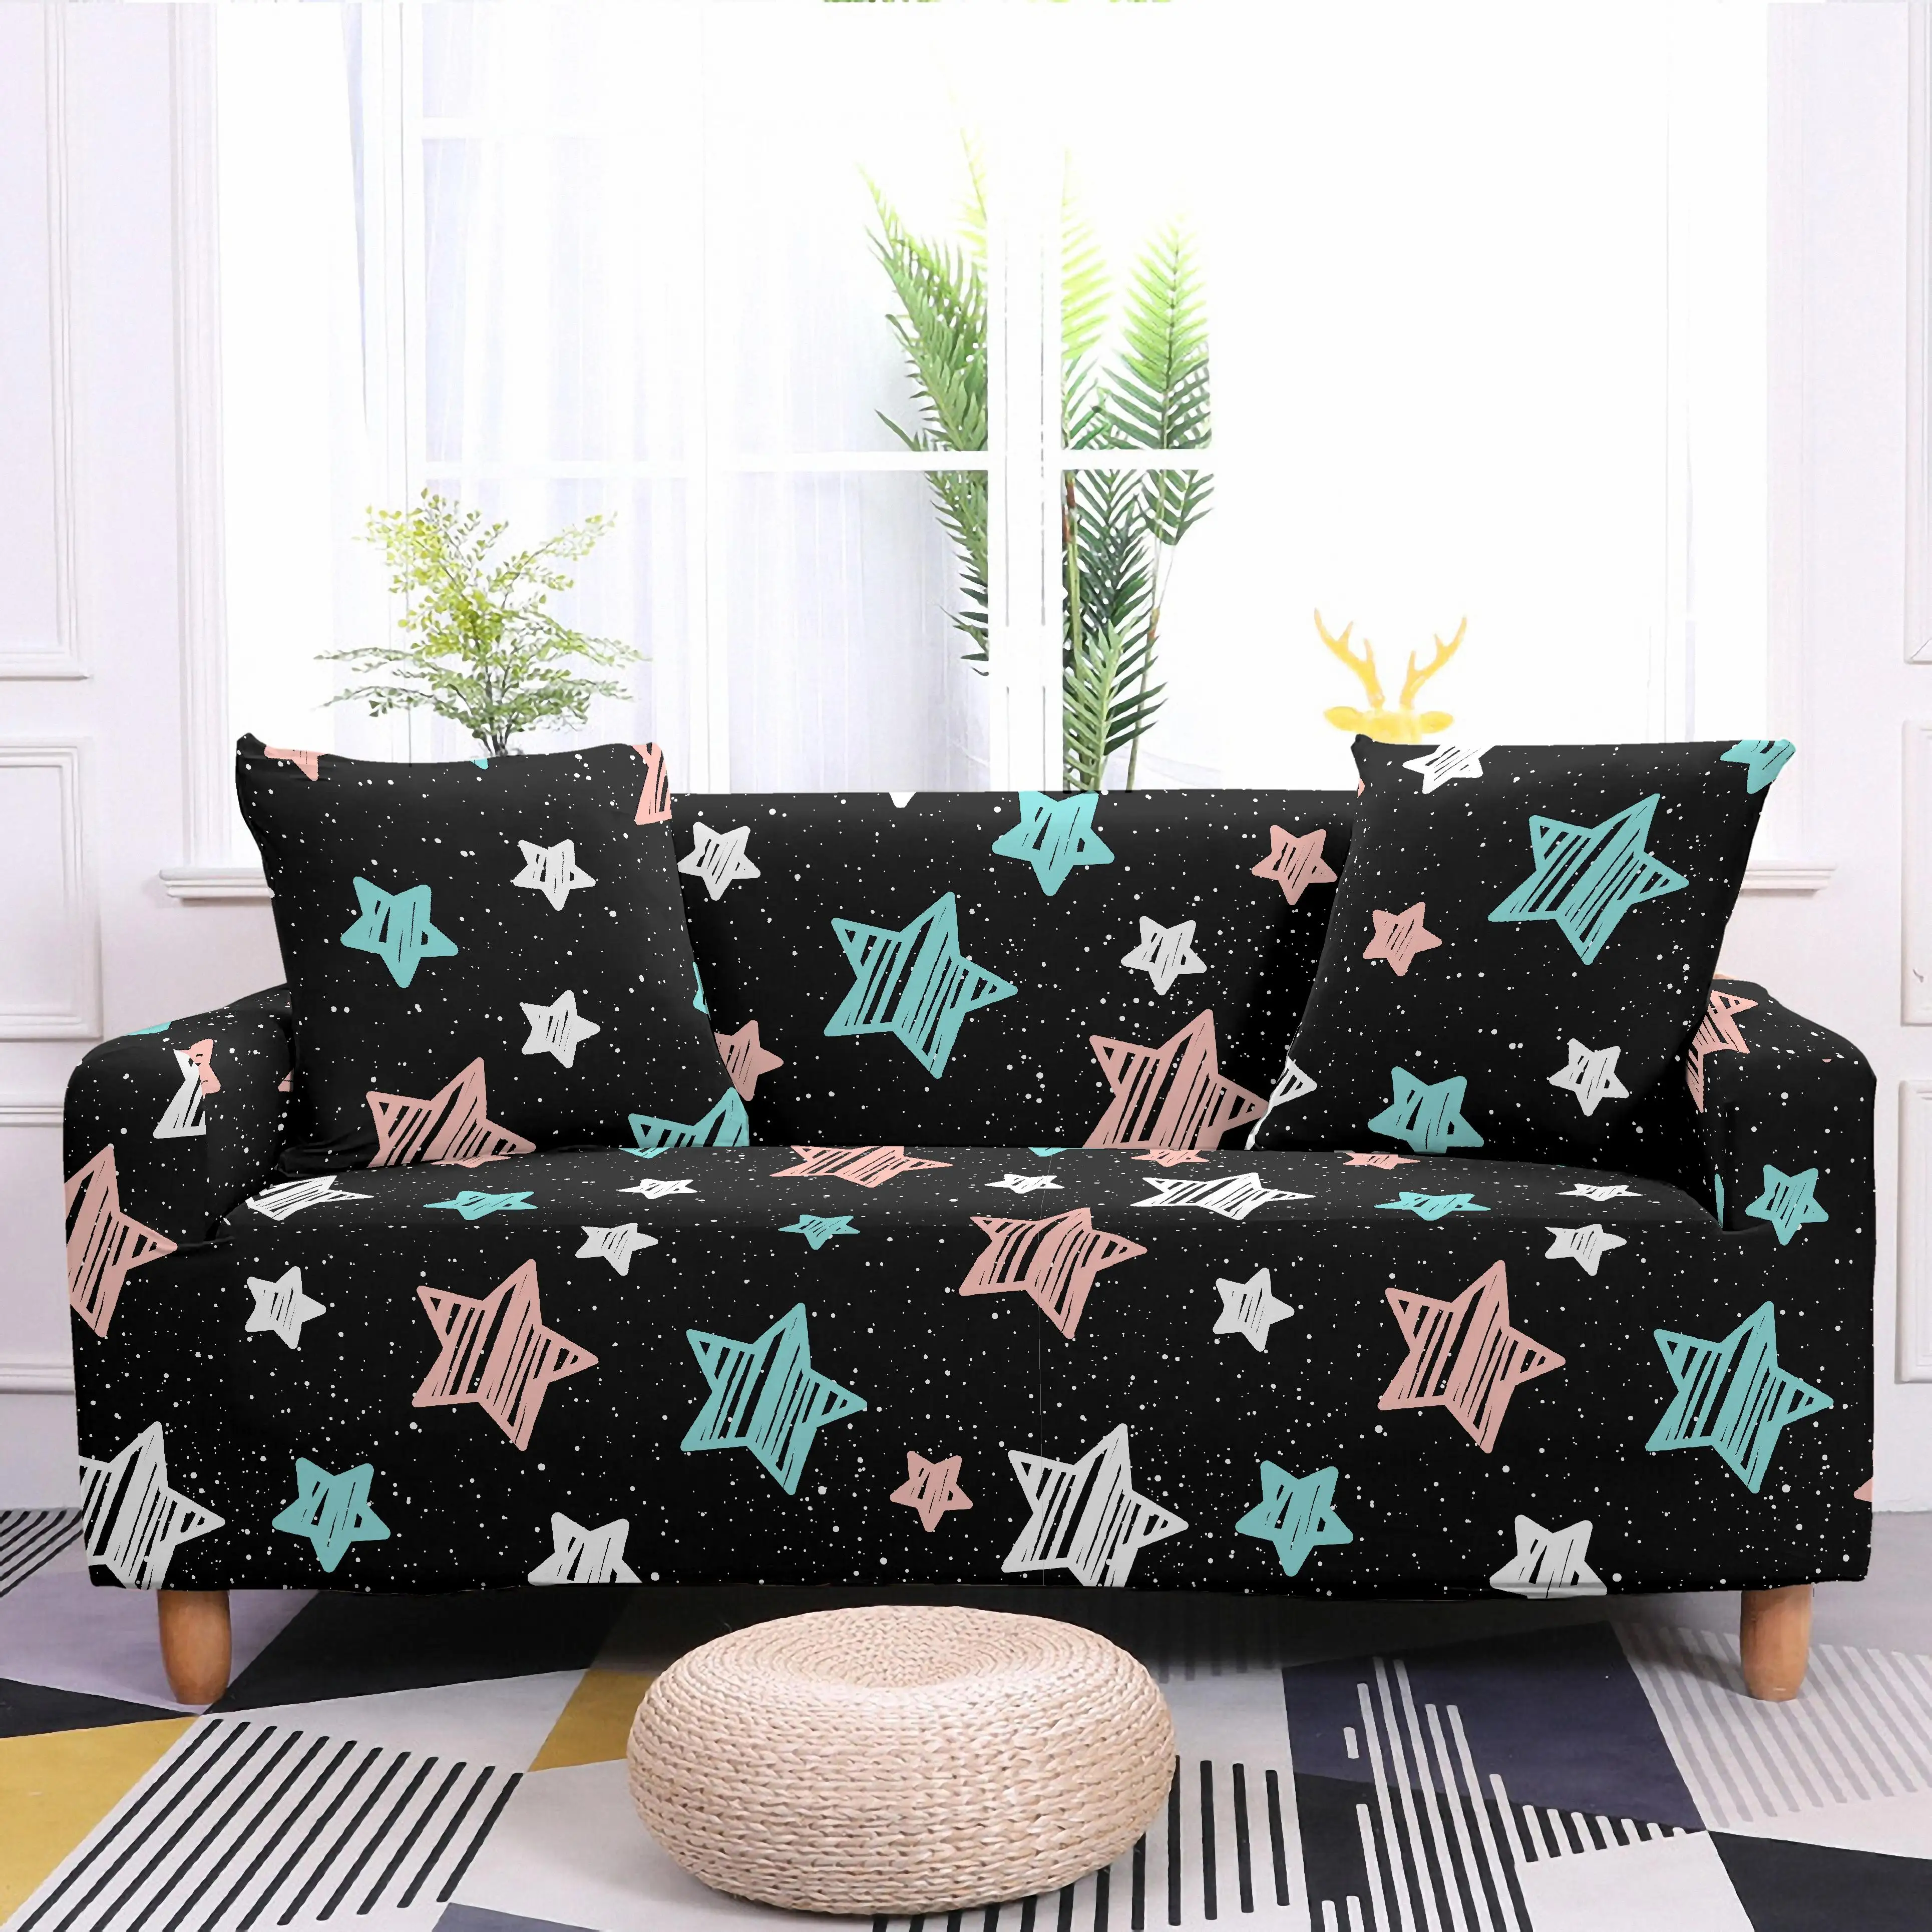 

Эластичный чехол для дивана Starry, секционный эластичный чехол для дивана в гостиную, чехол для подушки со звездами